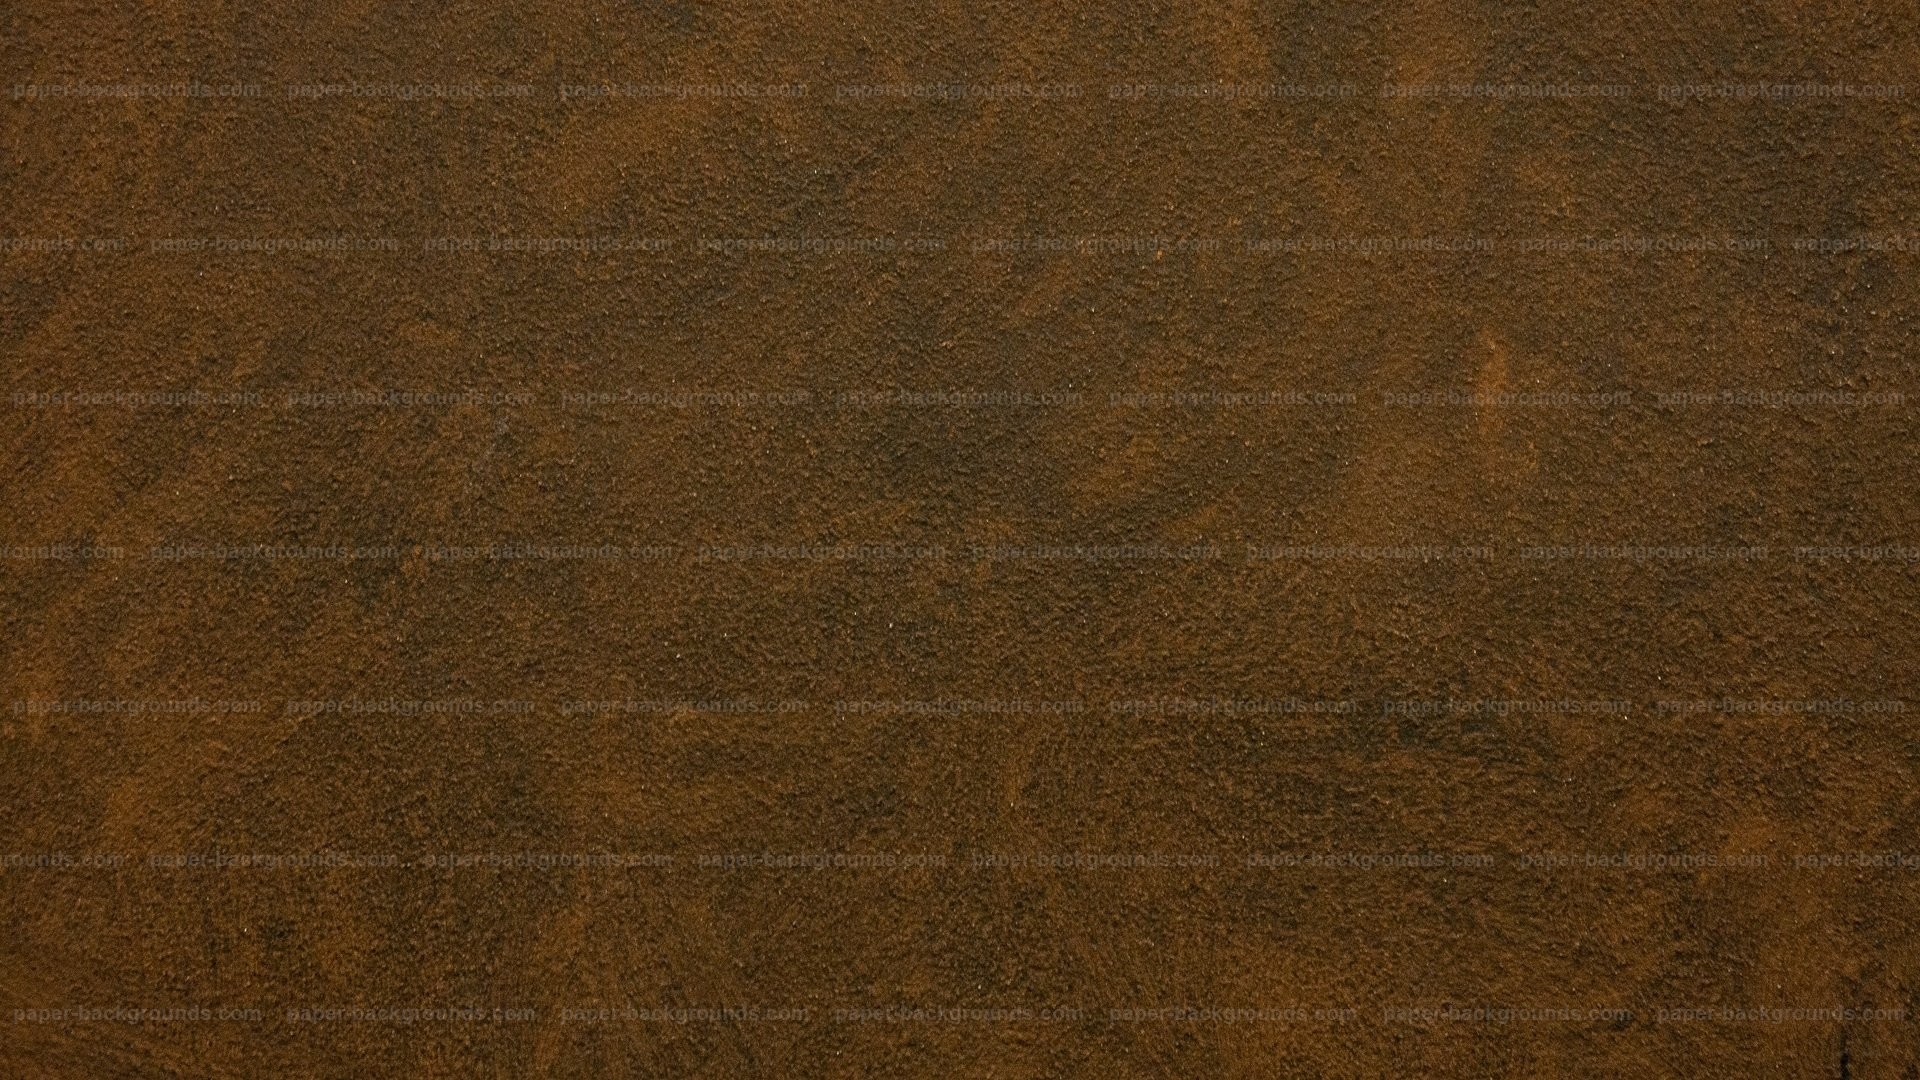 1920x1080 Dark Texture Textured Brown Grunge Textureimages Painted